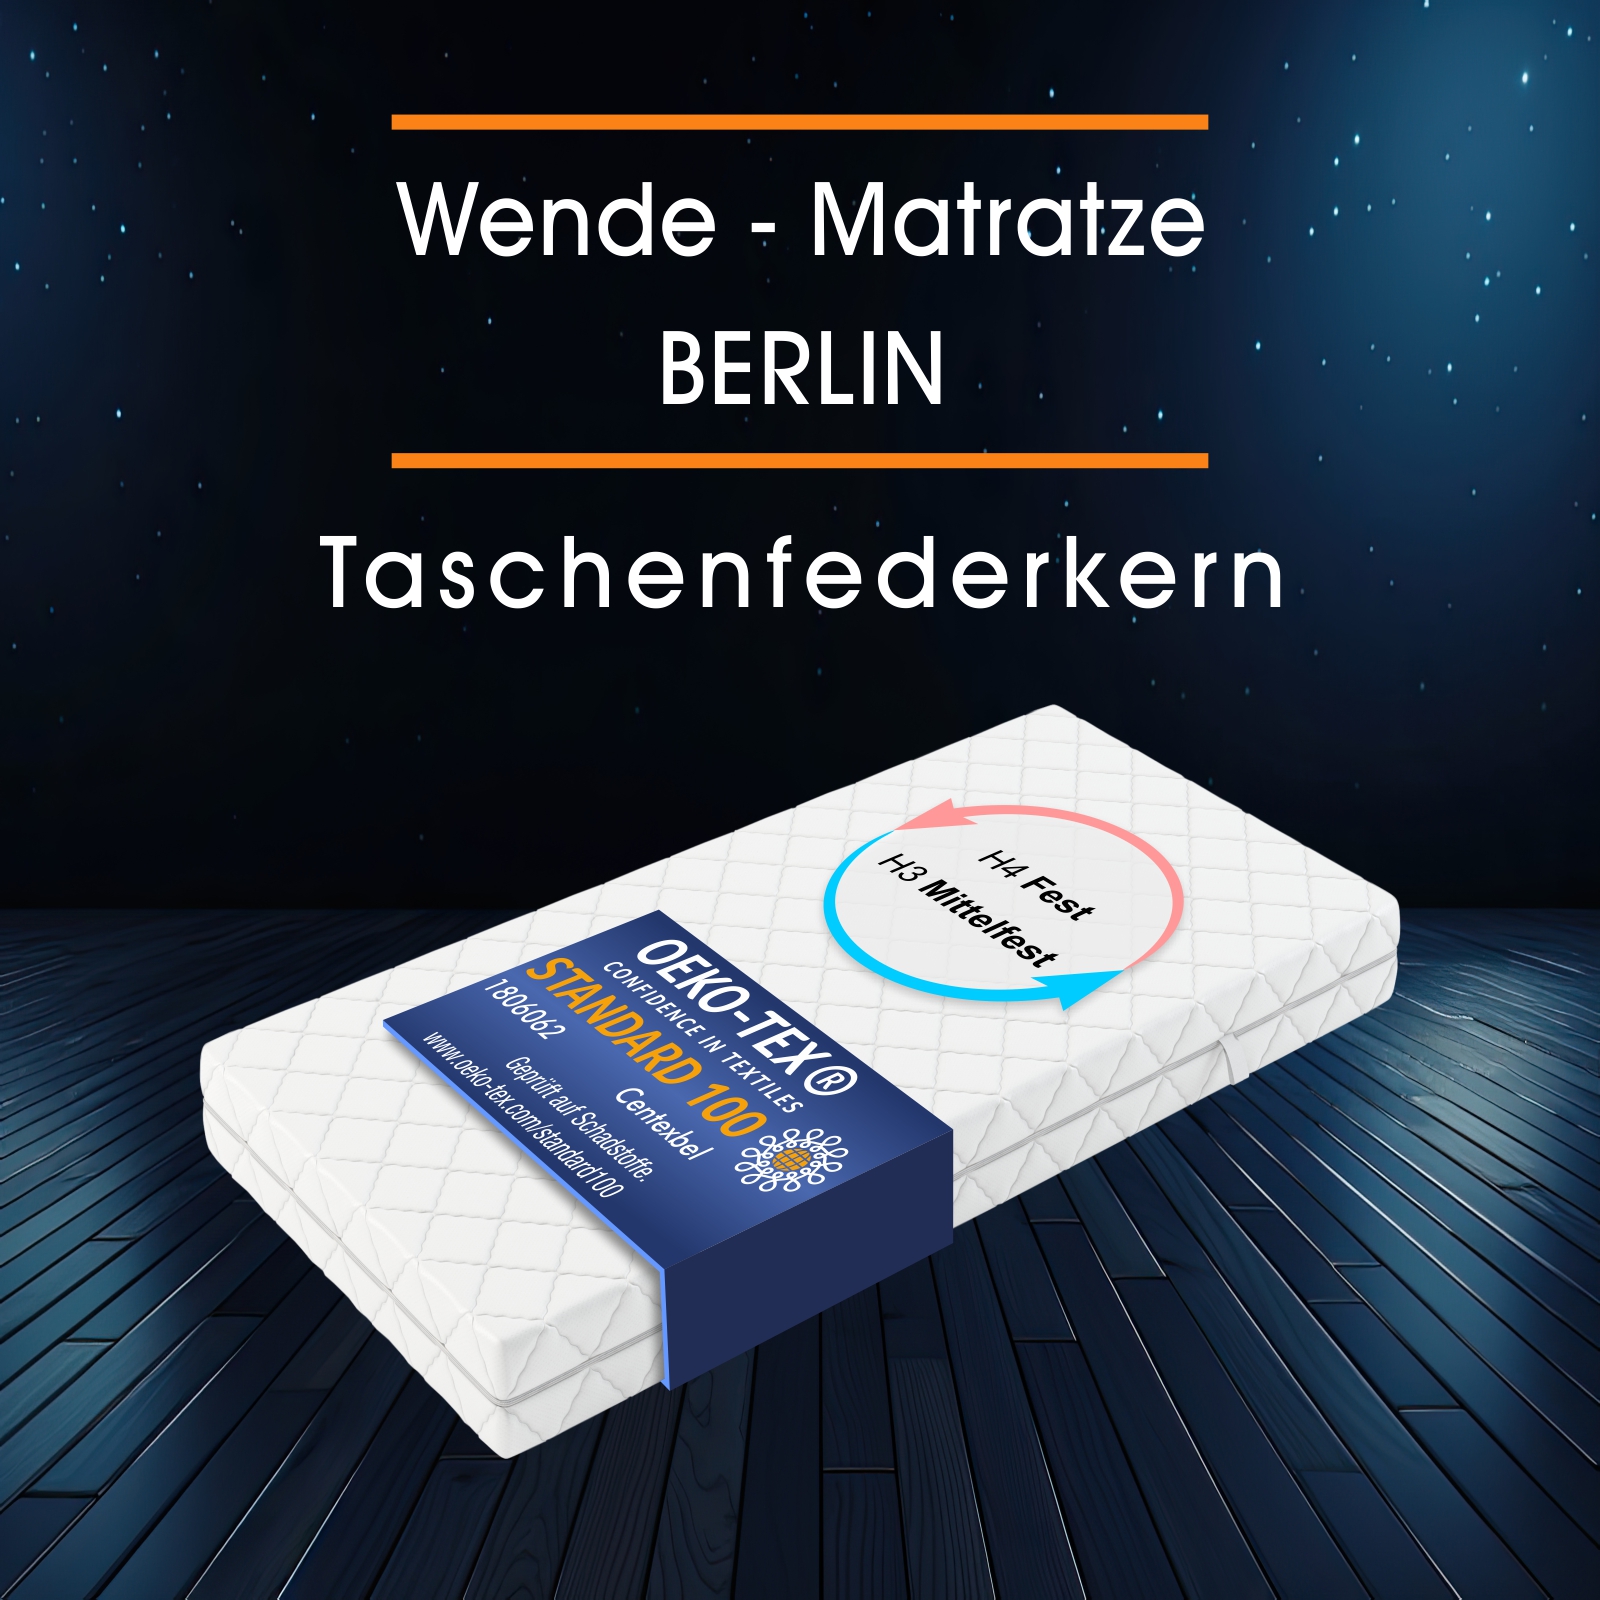 Berlin Plus, Wendematratze, Taschenfederkern mit zwei Härtegraden (H3 und H4)